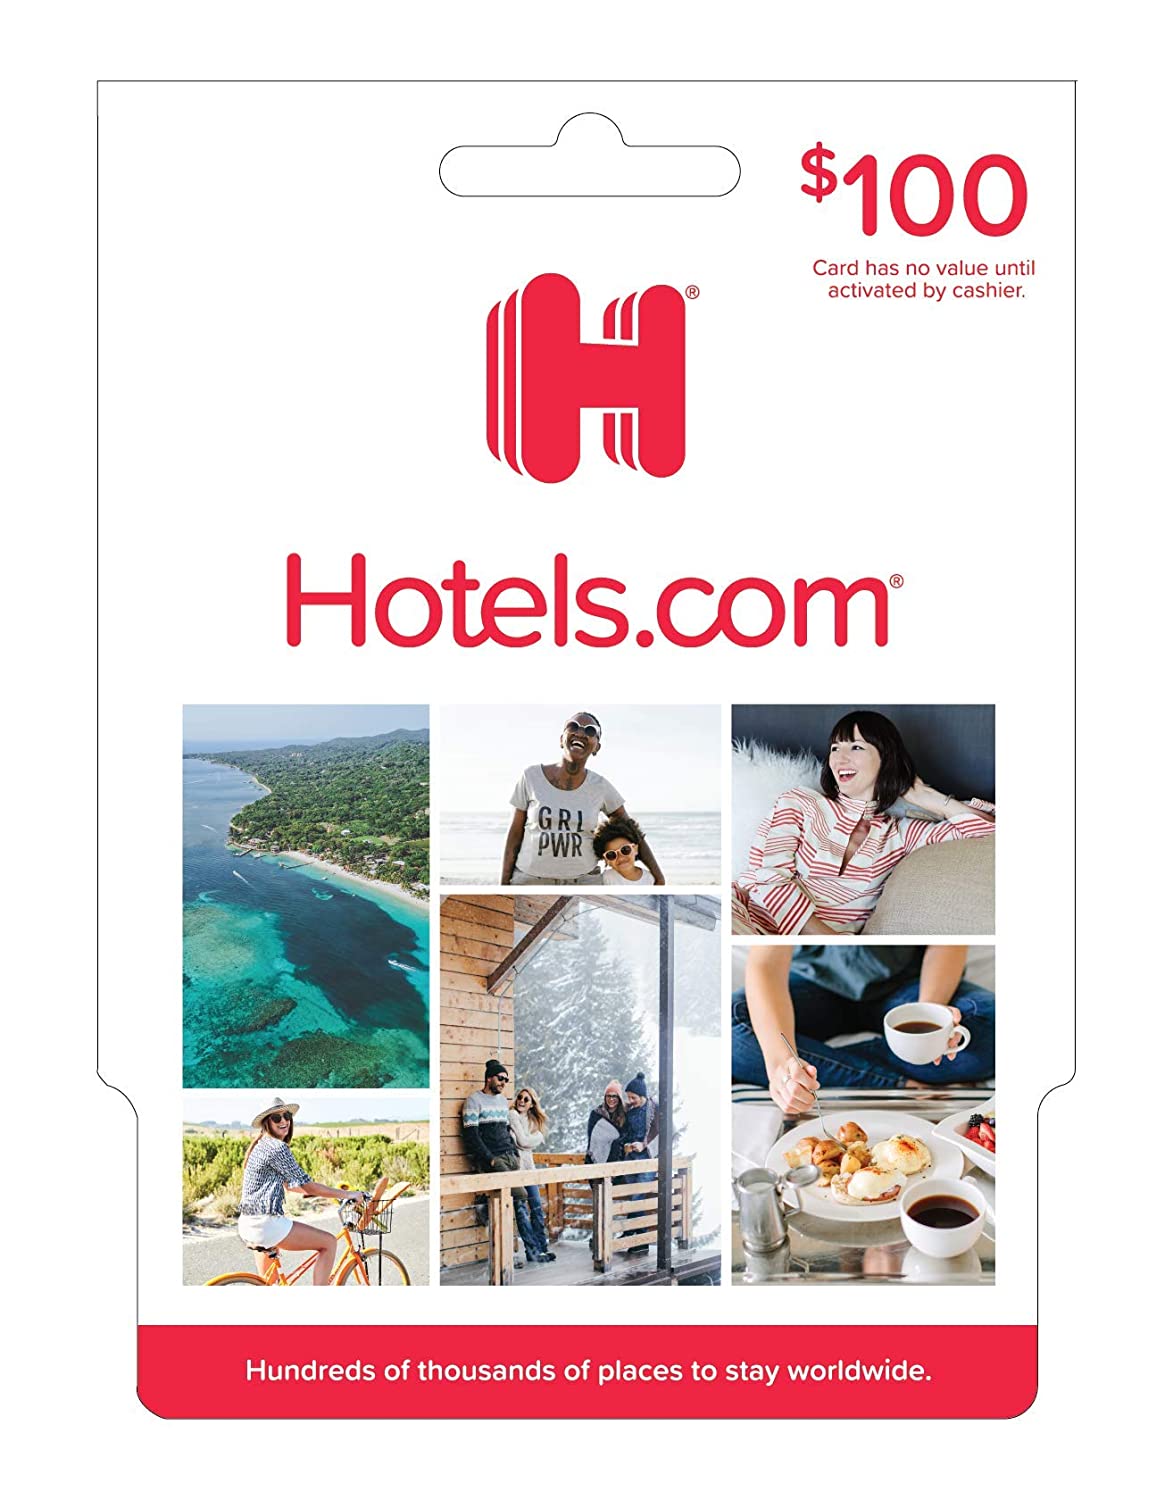 hotels.com gift card